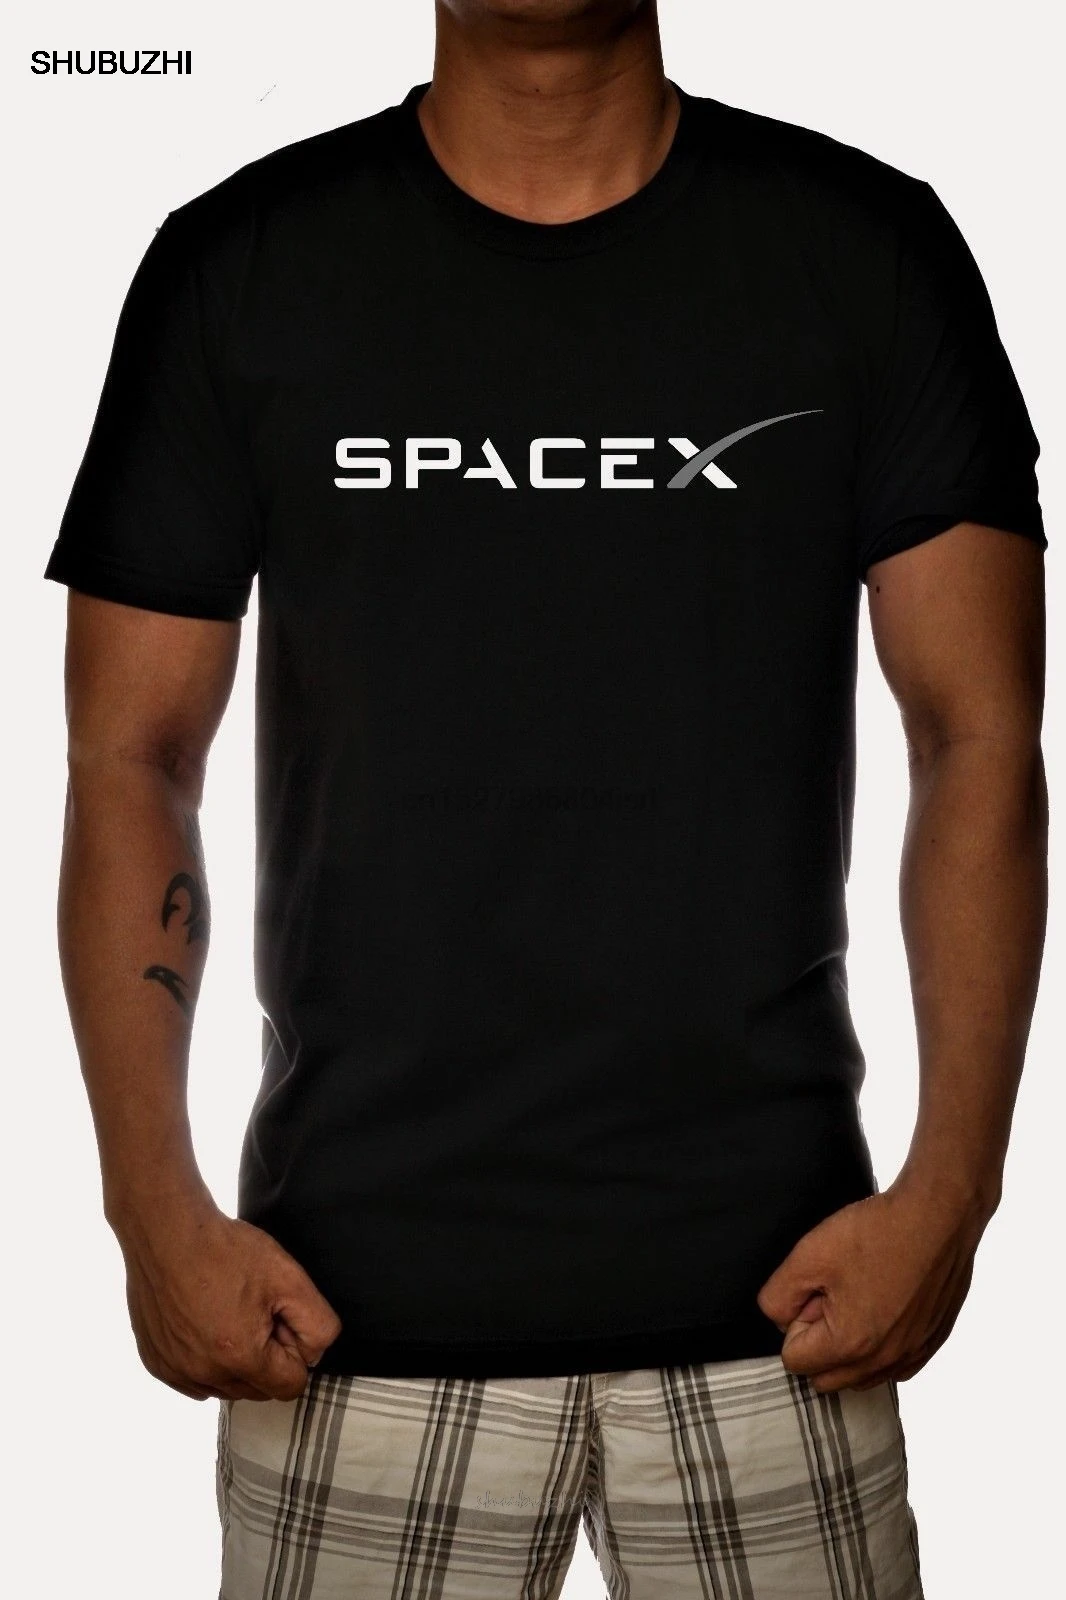 Футболка мужская с логотипом SPACEX SPACE X брендовая тенниска из хлопка рисунком